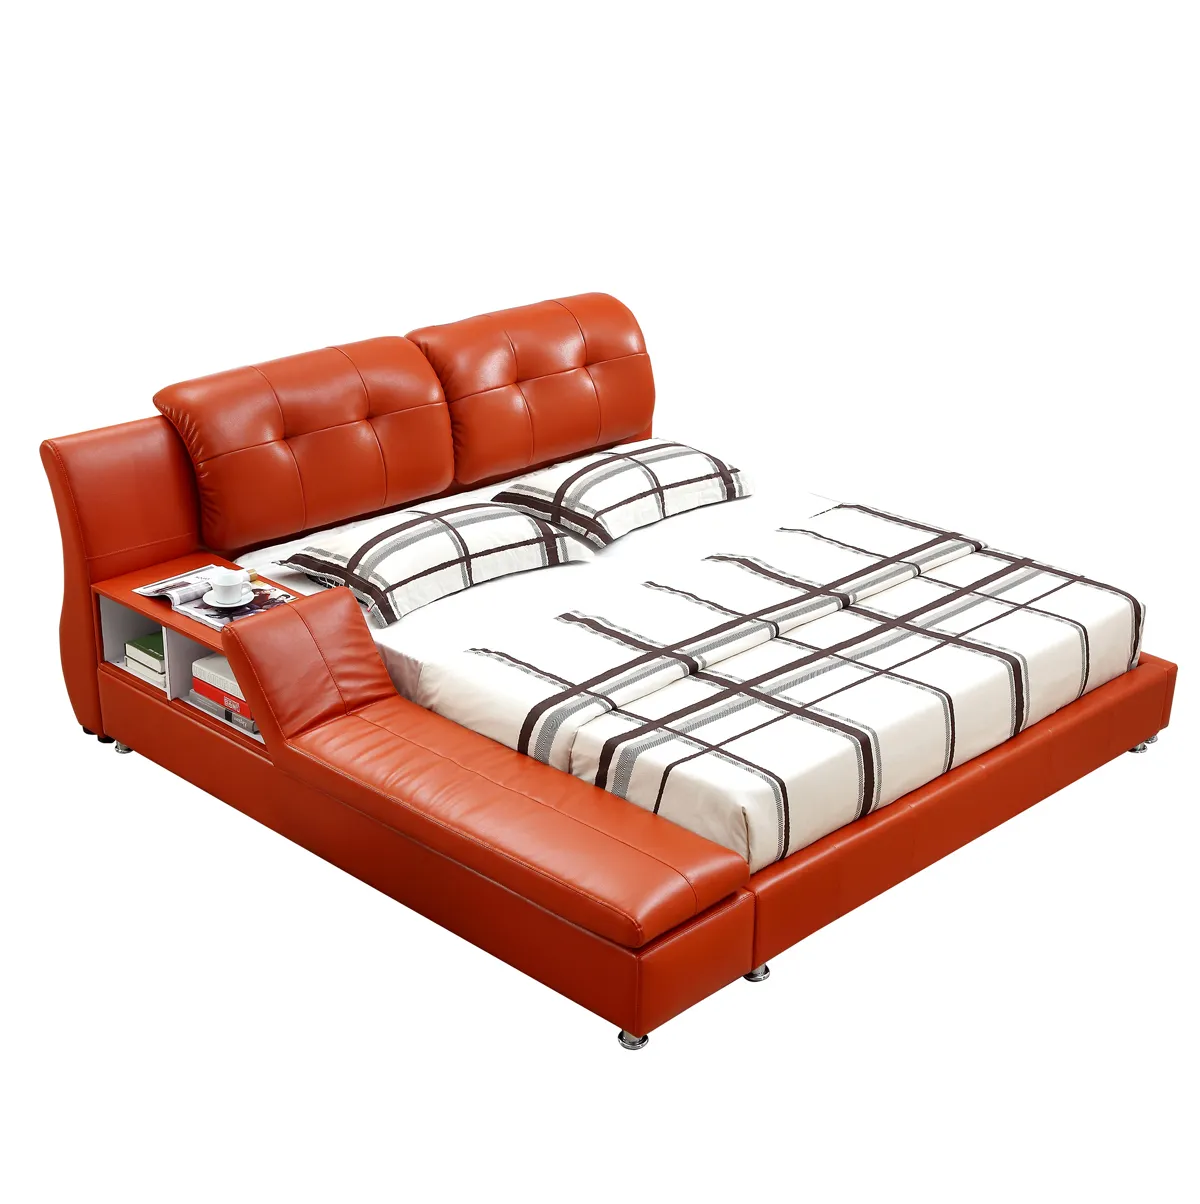 Menjual Set Furniture Kamar Tidur Baik Desain Sederhana Bingkai Ranjang King